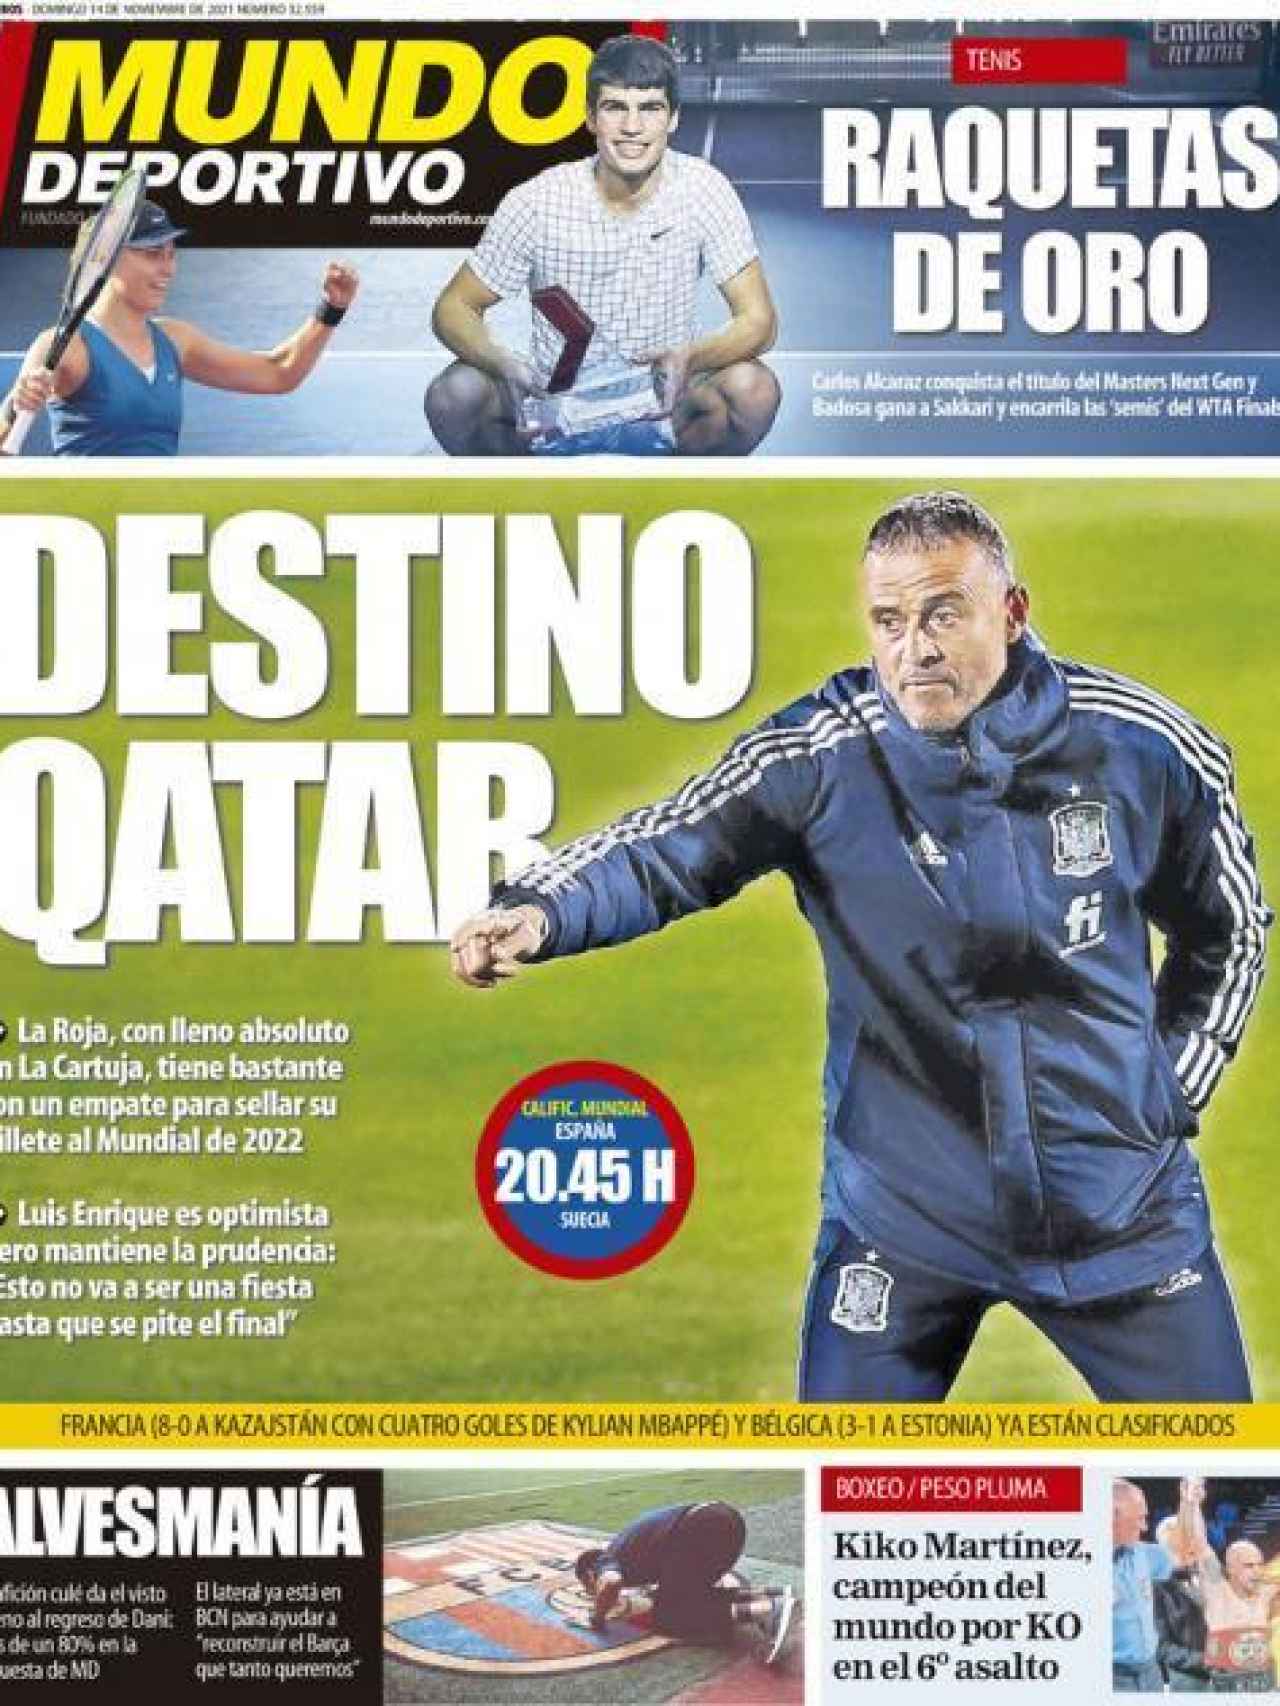 La portada del diario Mundo Deportivo (14/11/2021)